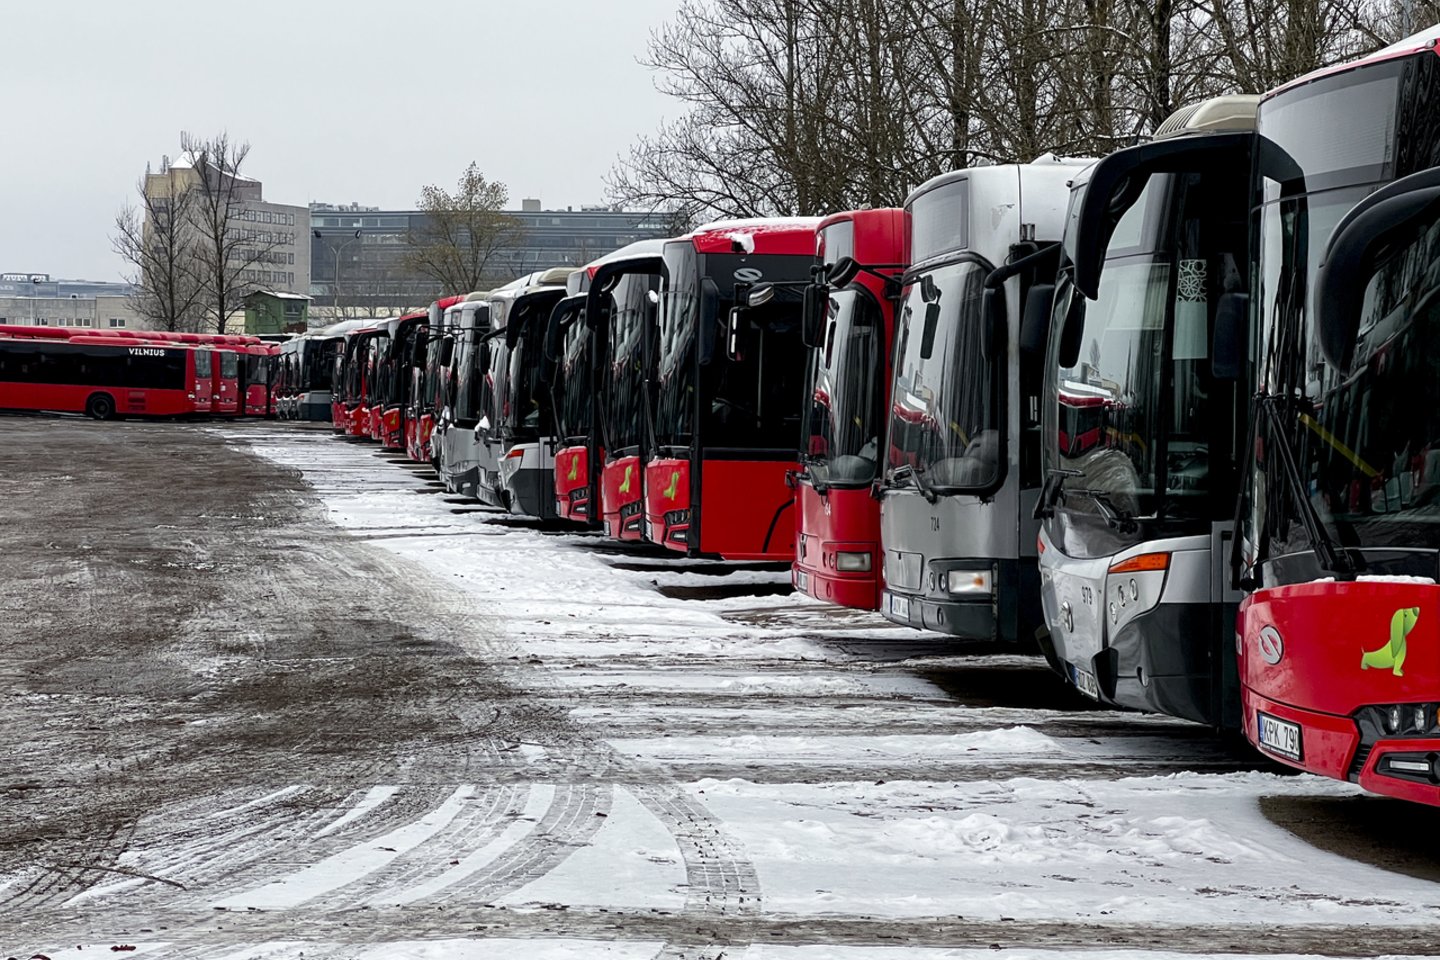 „Vilniaus viešojo transporto“ administracijai pasiekus susitarimą su profsąjunga, pustrečios savaitės trukęs vairuotojų streikas sostinėje sustabdytas.<br>V.Ščiavinsko nuotr.